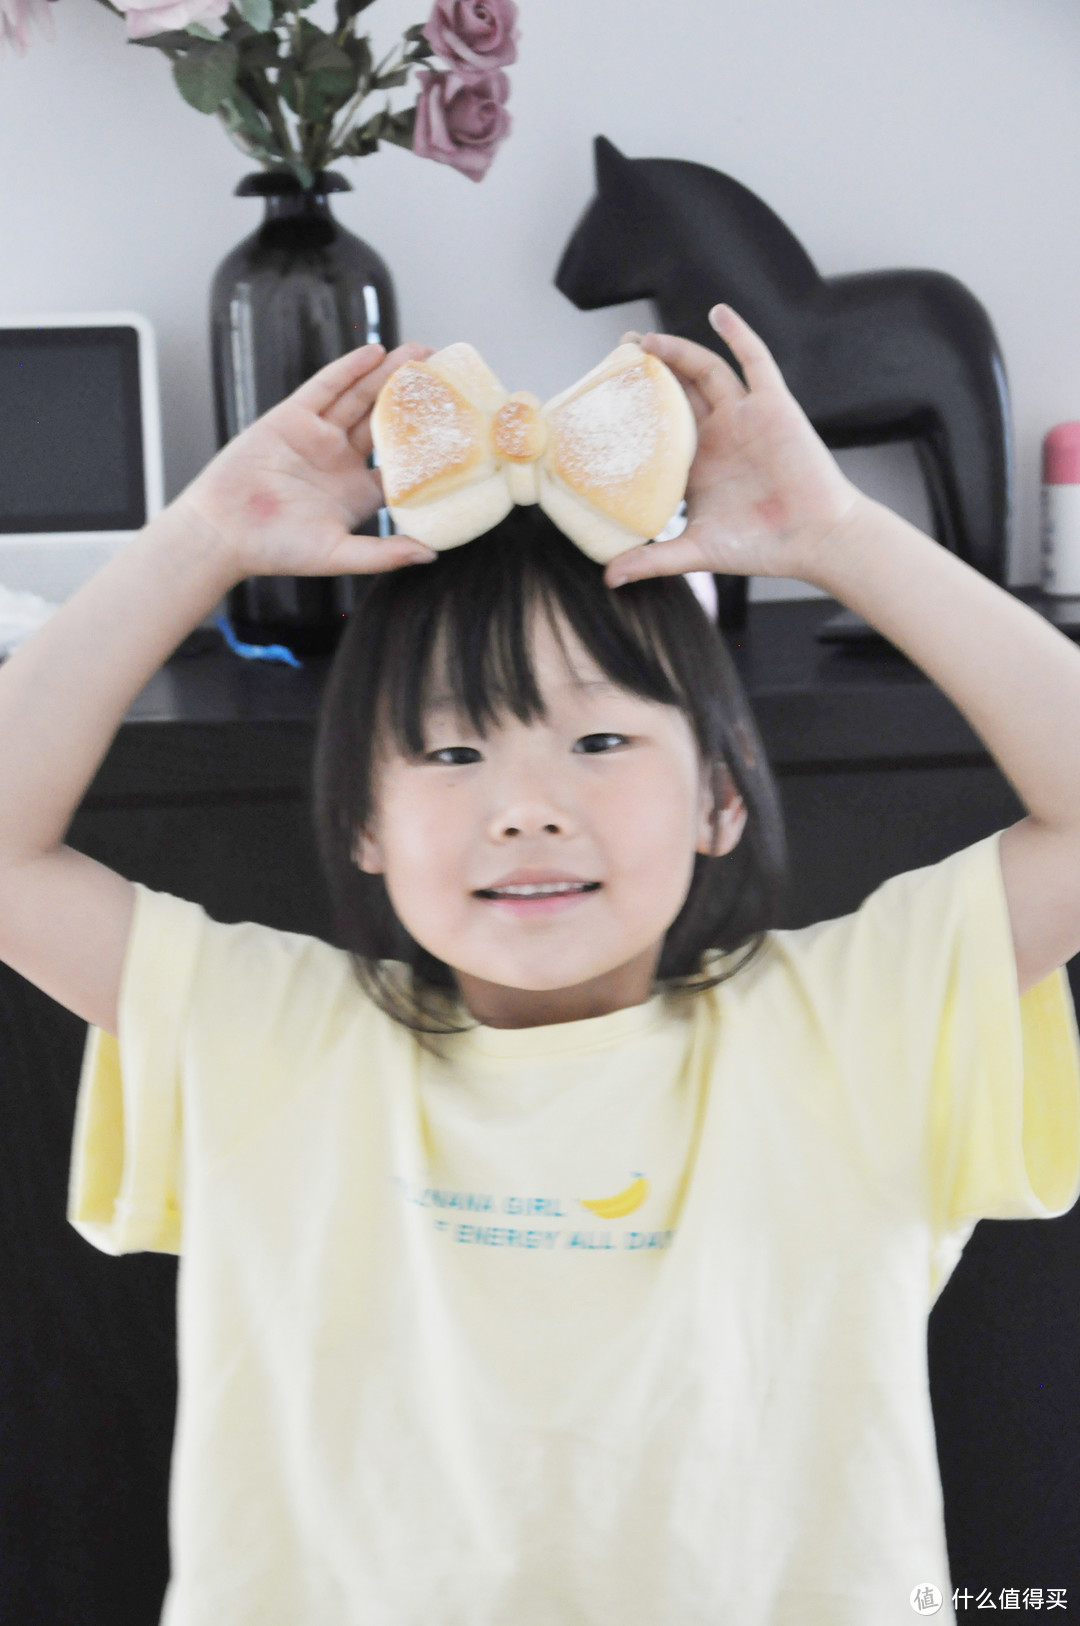 如何做出一款孩子超级喜欢的可爱蝴蝶结面包? 附详细配方和步骤!